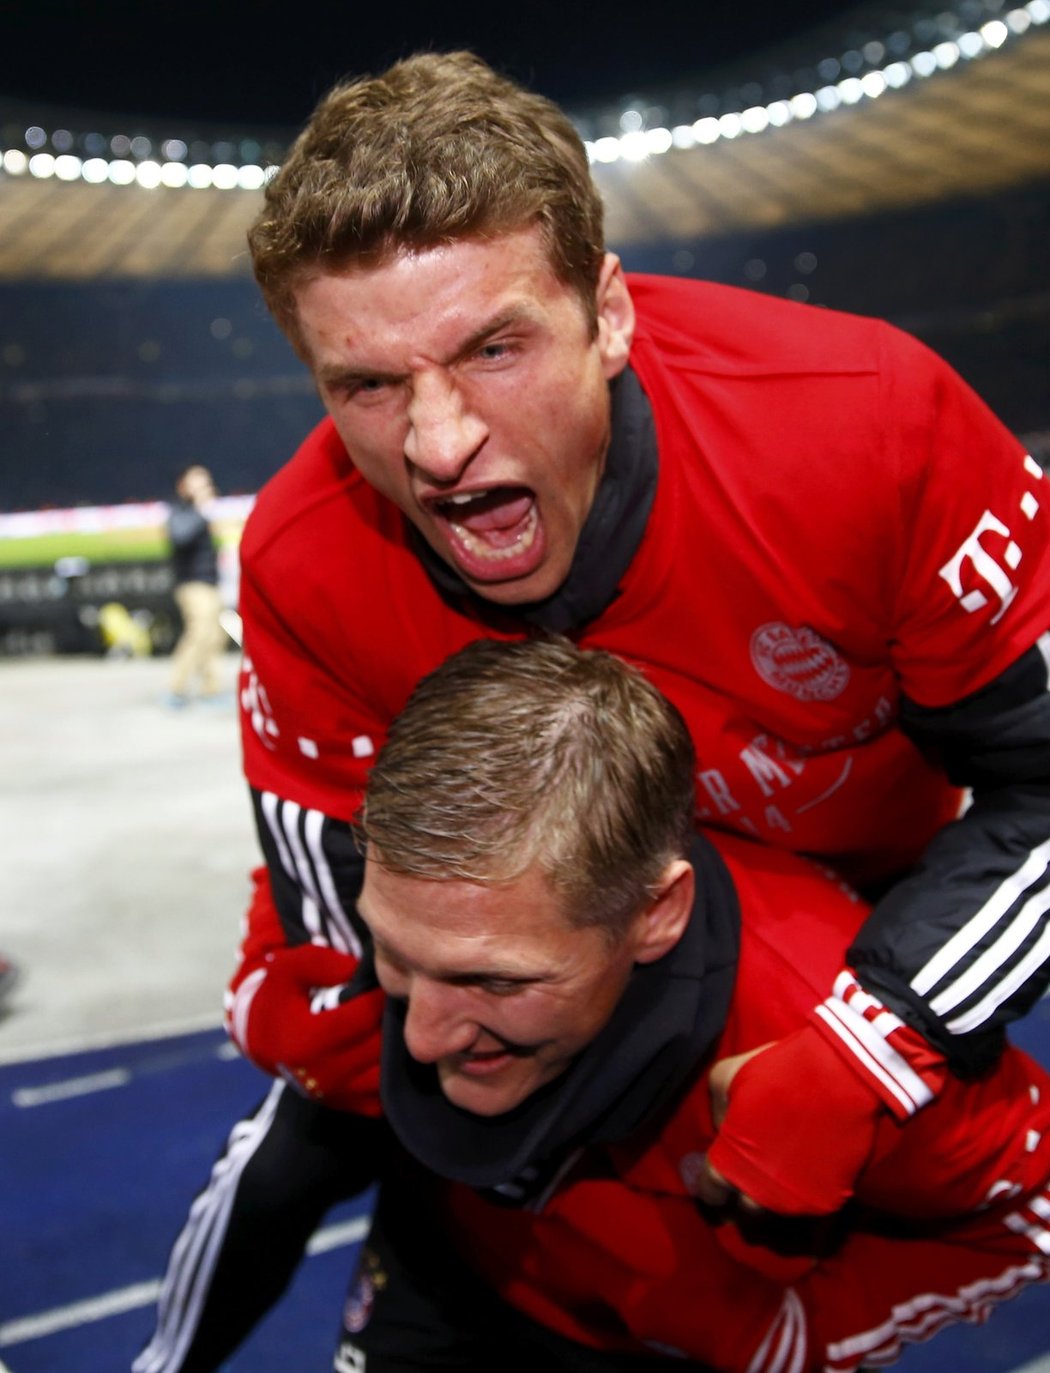 Fotbalisté Bayernu Mnichov získali sedm kol před koncem německé ligy 24. mistrovský titul. Rekordně rychlou obhajobu trofeje zajistila bavorskému klubu výhra 3:1 na hřišti nováčka Herthy Berlín.